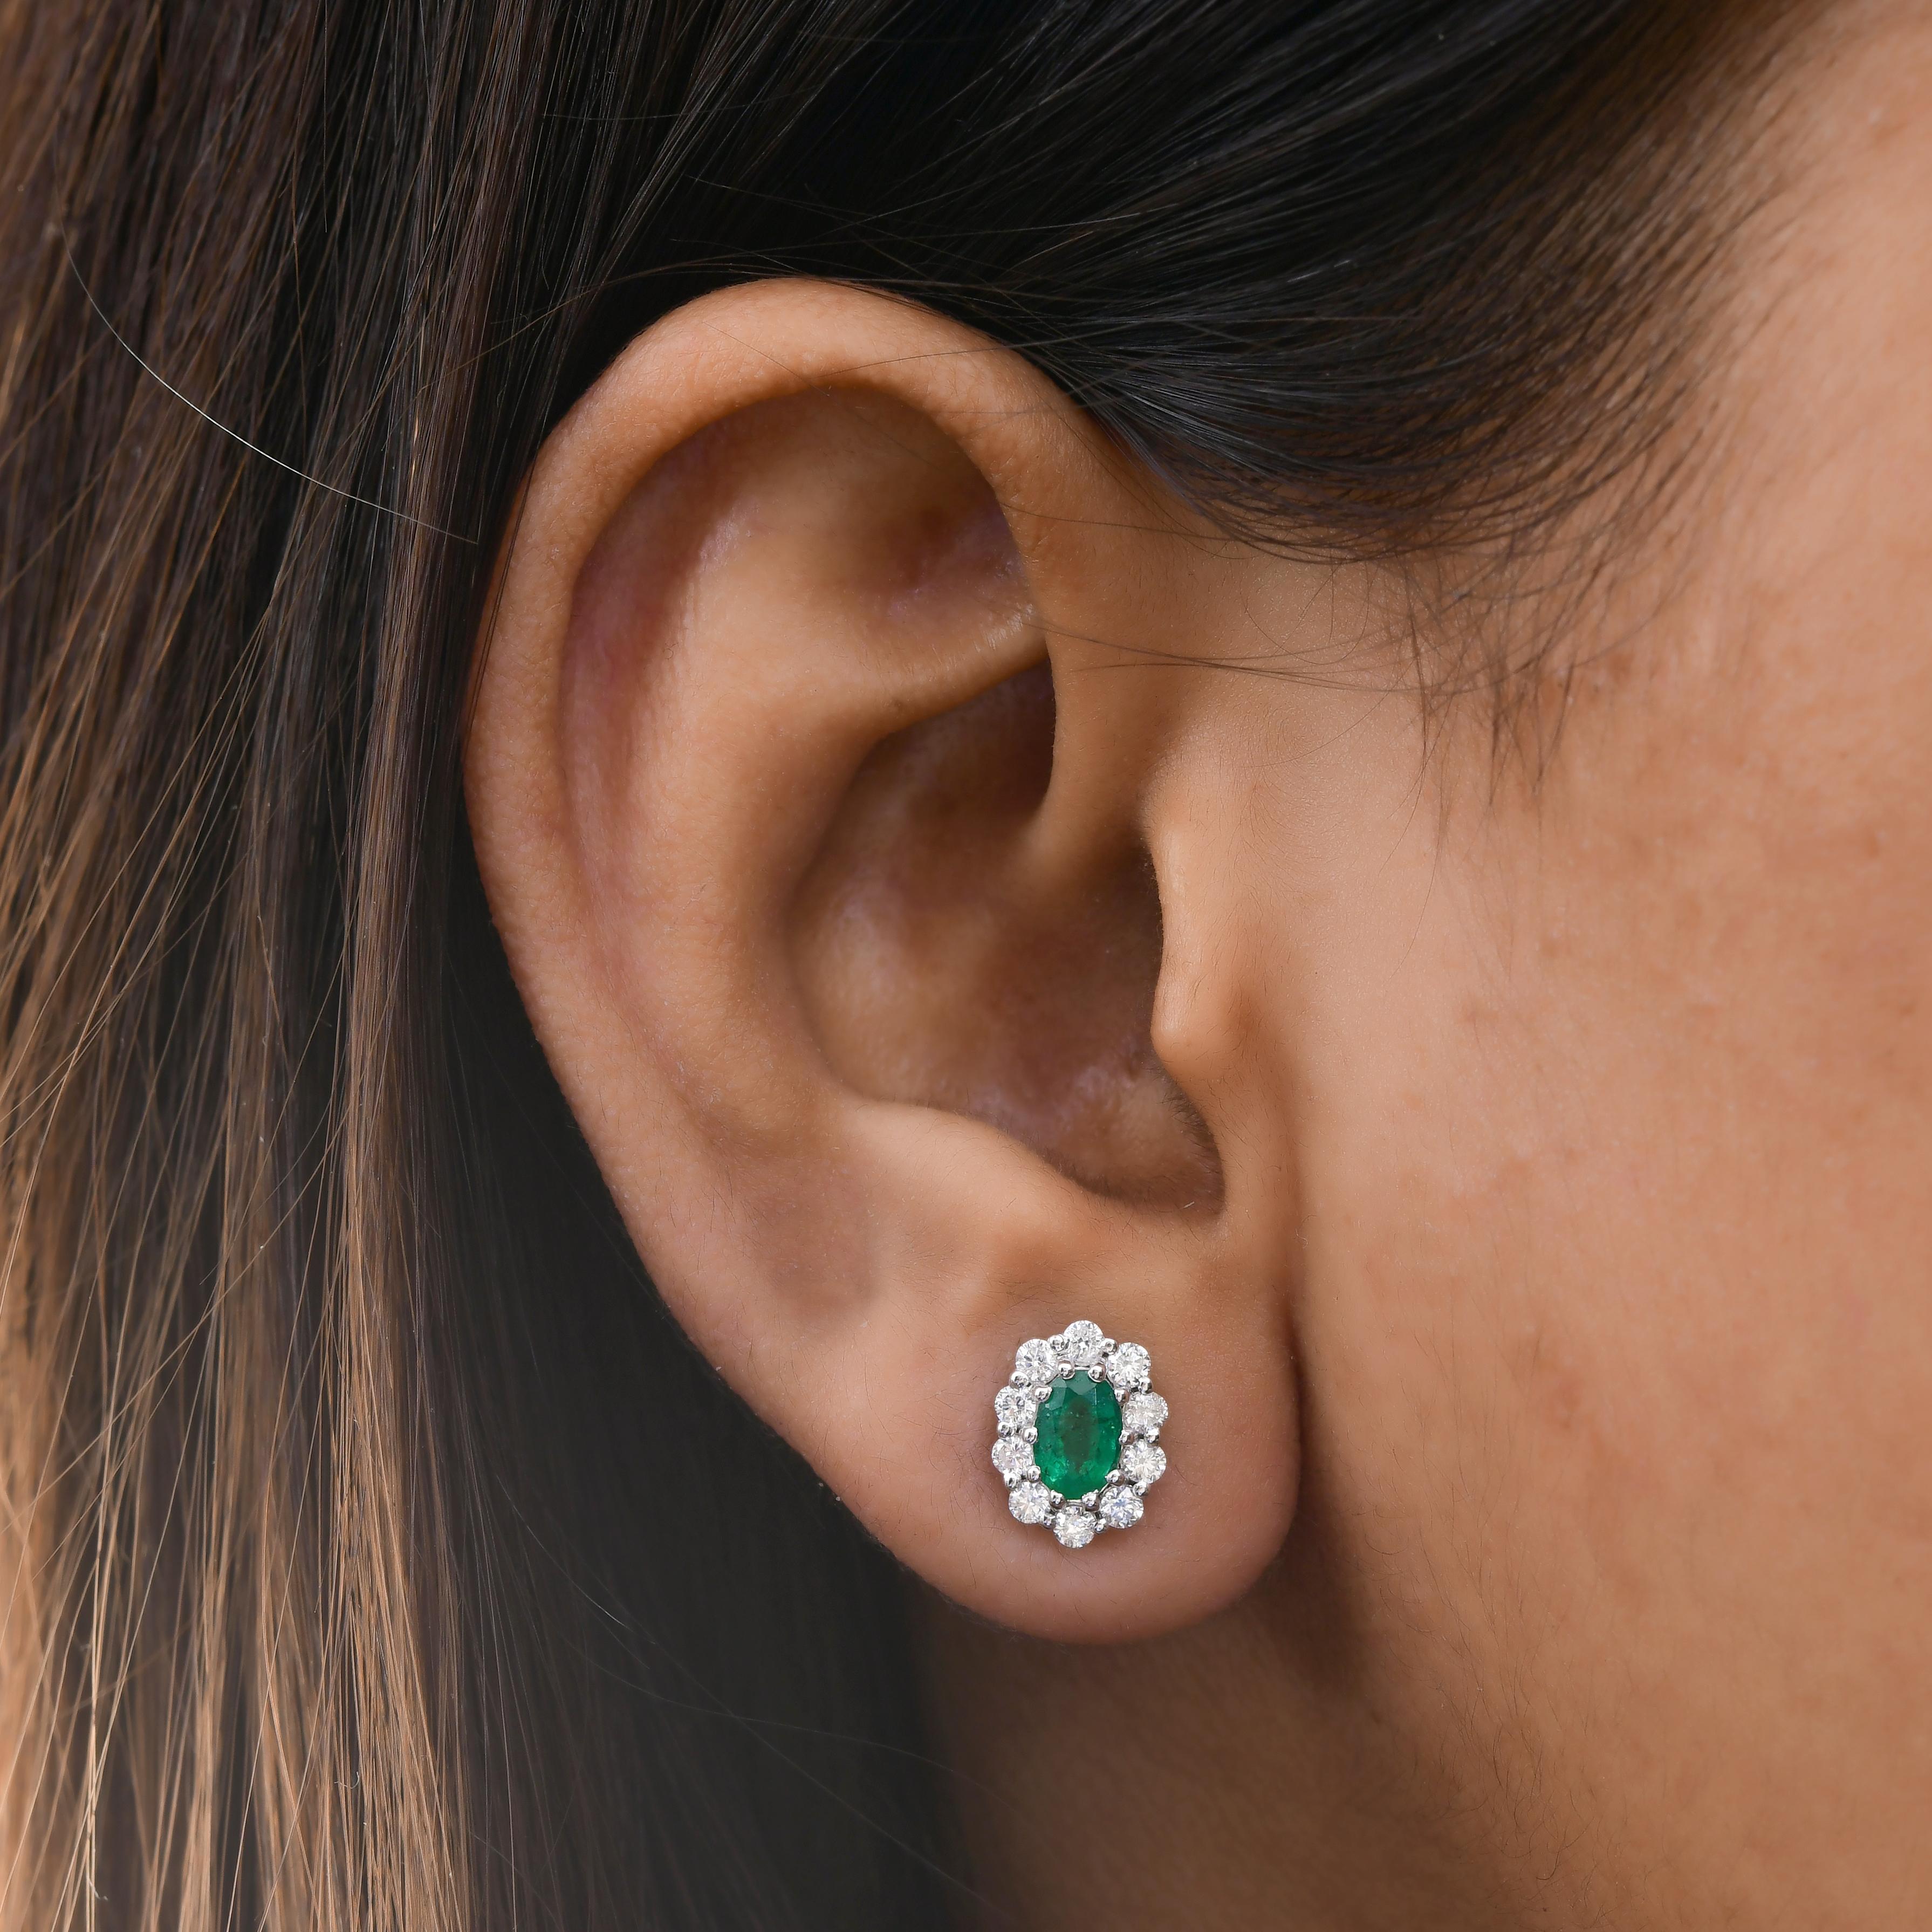 Oval Cut Oval Zambian Emerald Gemstone Stud Earrings Diamond 18 Karat White Gold Jewelry For Sale